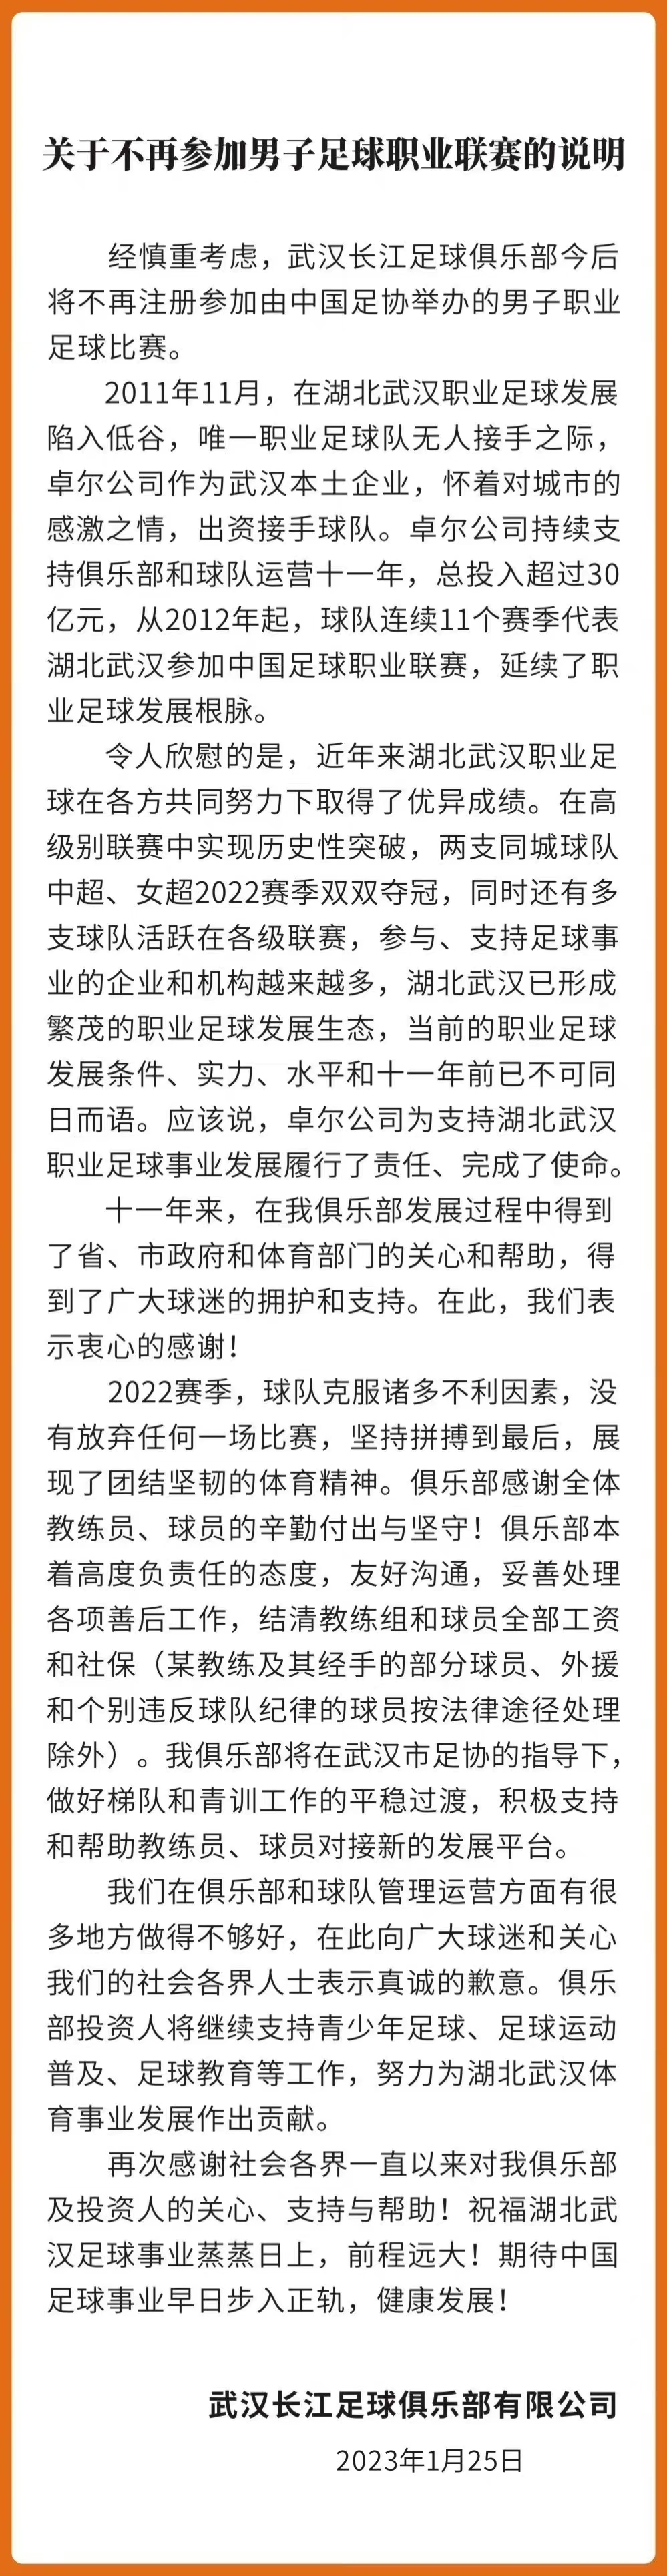 武汉长江足球俱乐部宣布解散，不再参加职业联赛